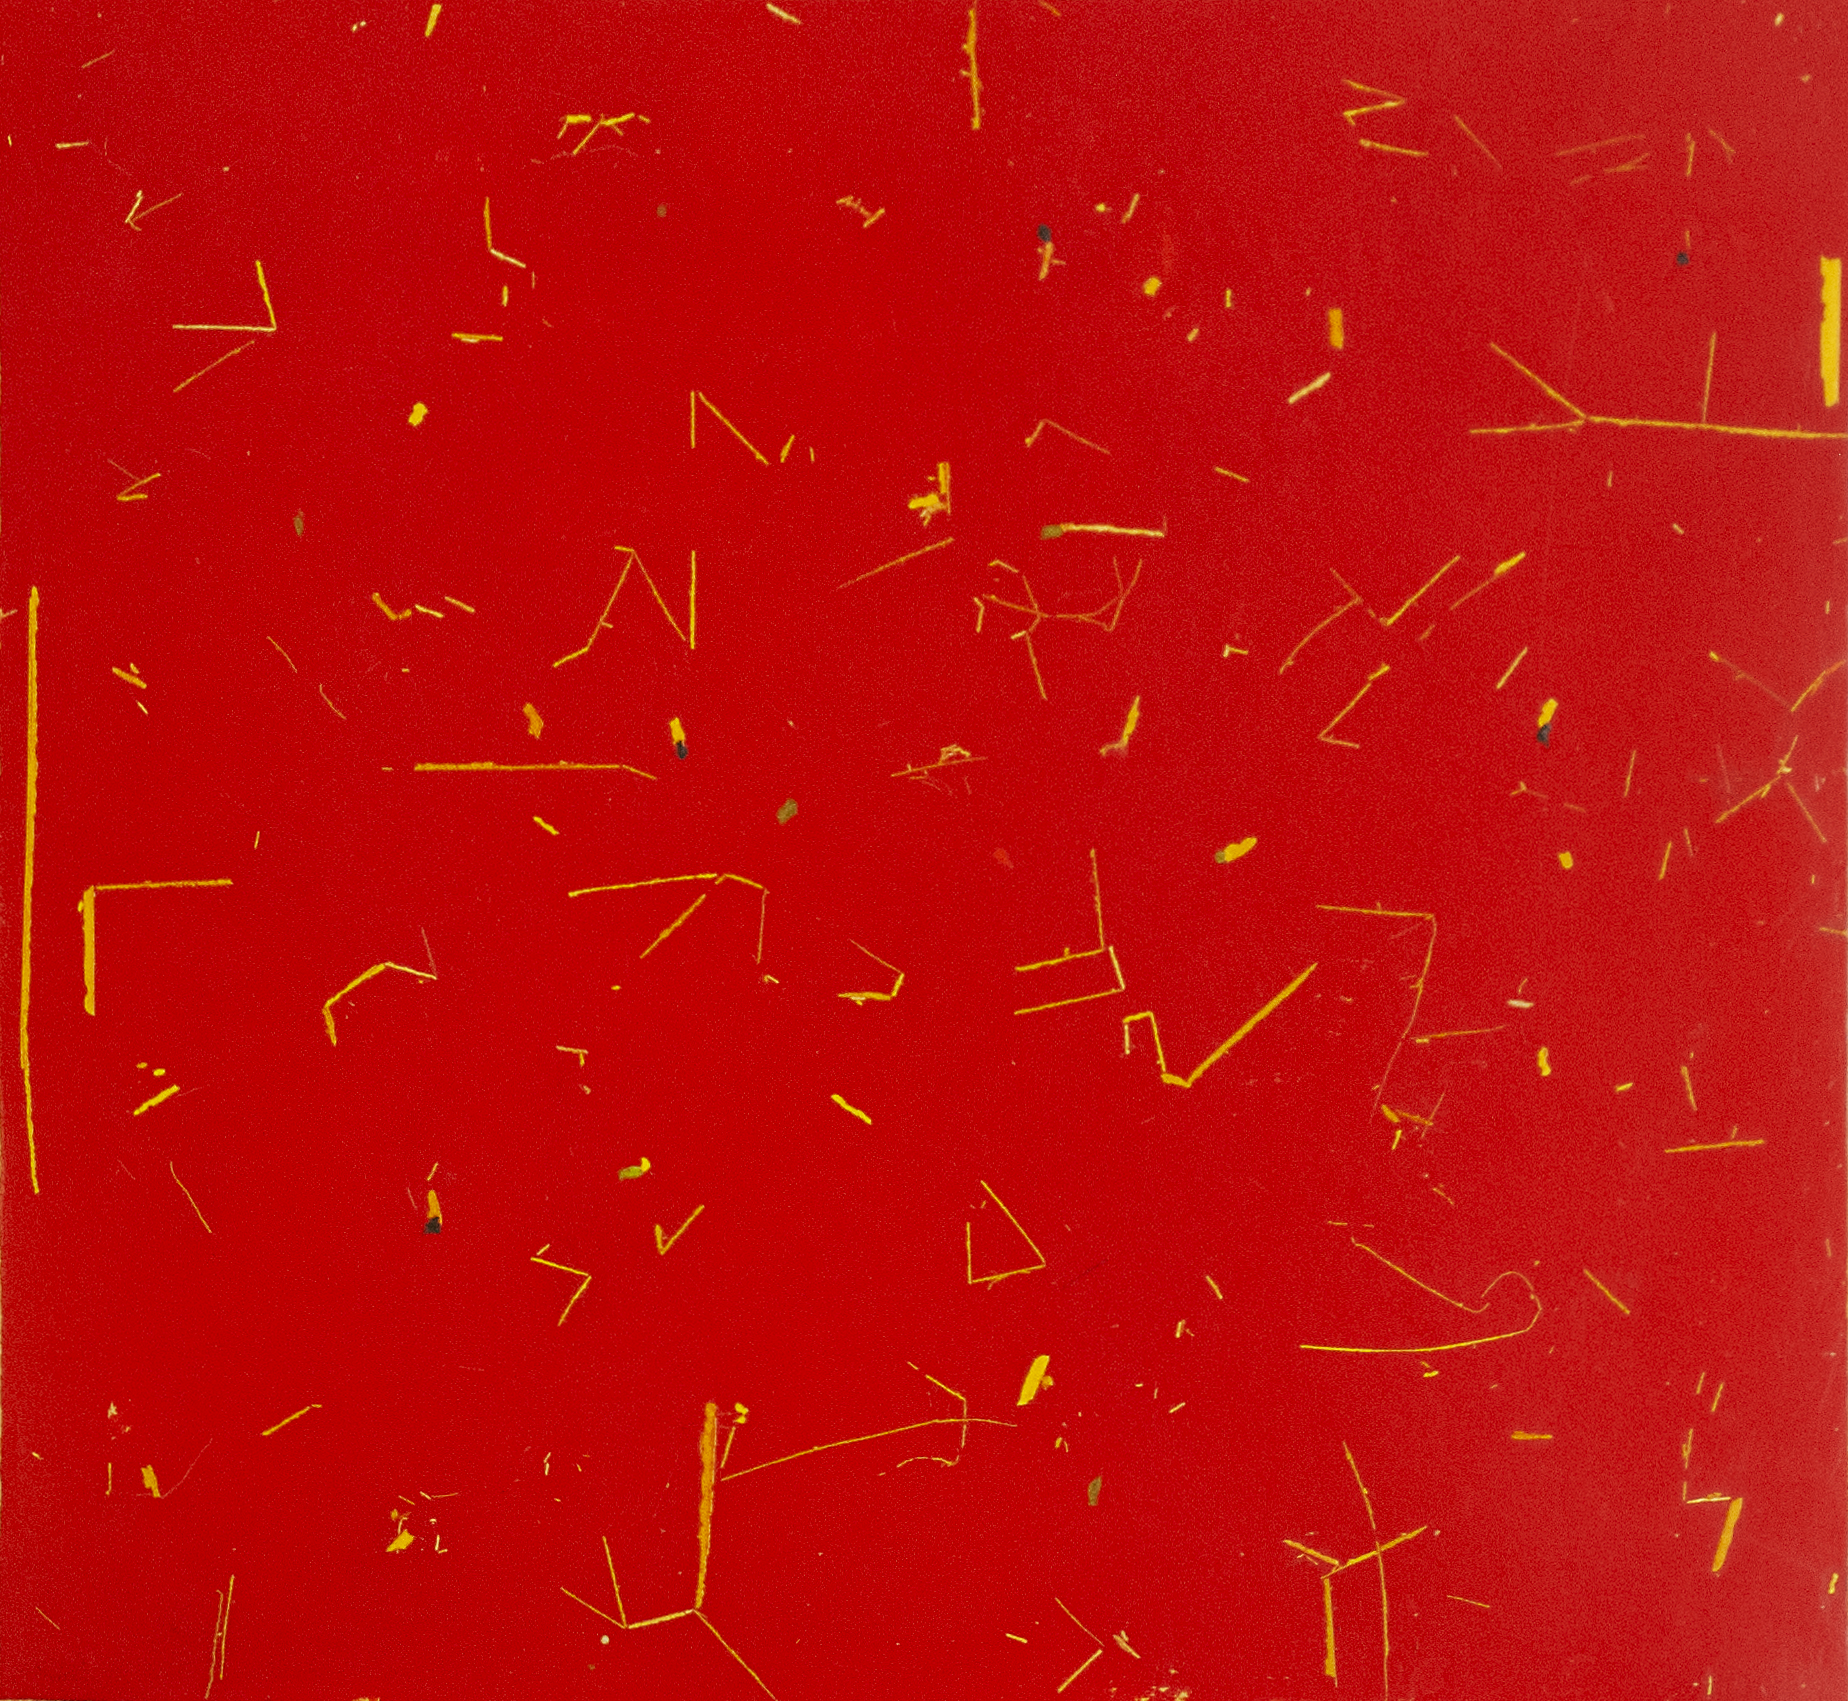 RC Abstracto con fondo Rojo 2021 475x52 cm Oil on paper Pigment Gallery Galería de Arte en Barcelona Rosanna Casano